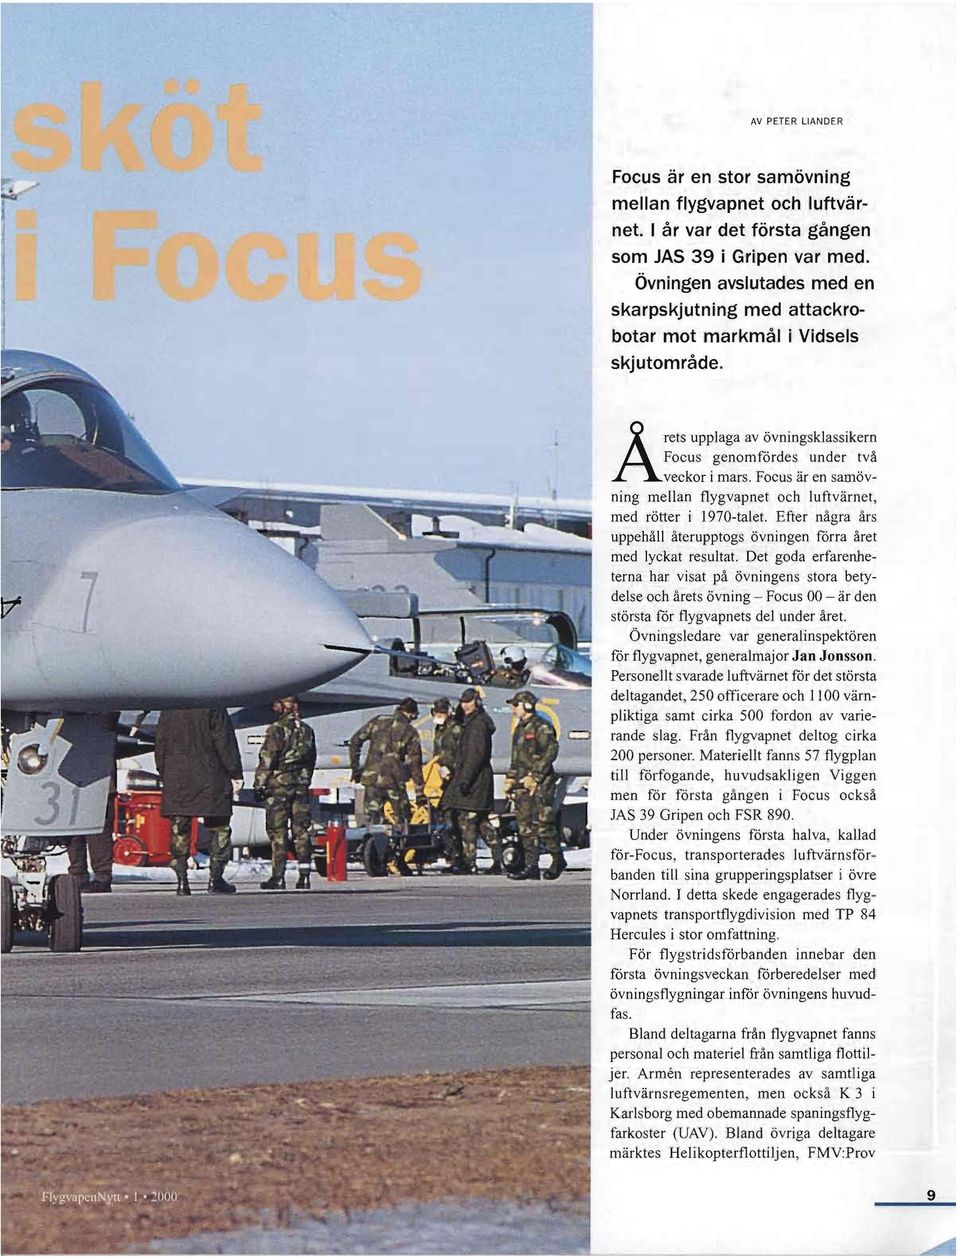 Focus är en samövning mellan flygvapnet och luftvärnet, med rötter i 1970-talet. Efter några års uppehåll återupptogs övningen förra året med lyckat resultat.